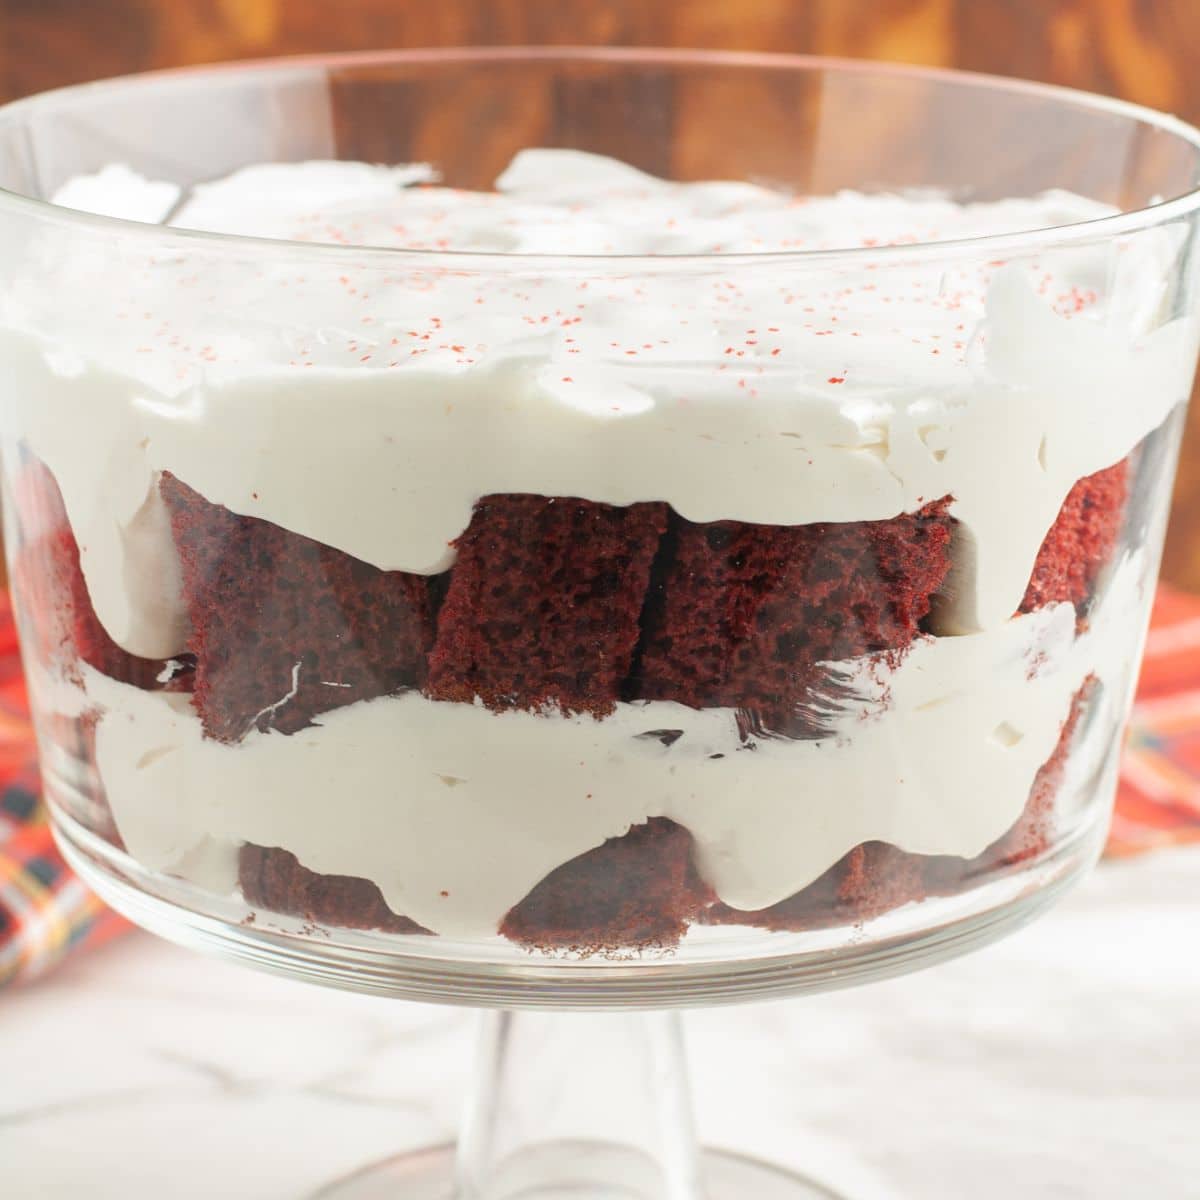 https://www.foodlovinfamily.com/wp-content/uploads/2015/12/red-velvet-trifle-recipe.jpg